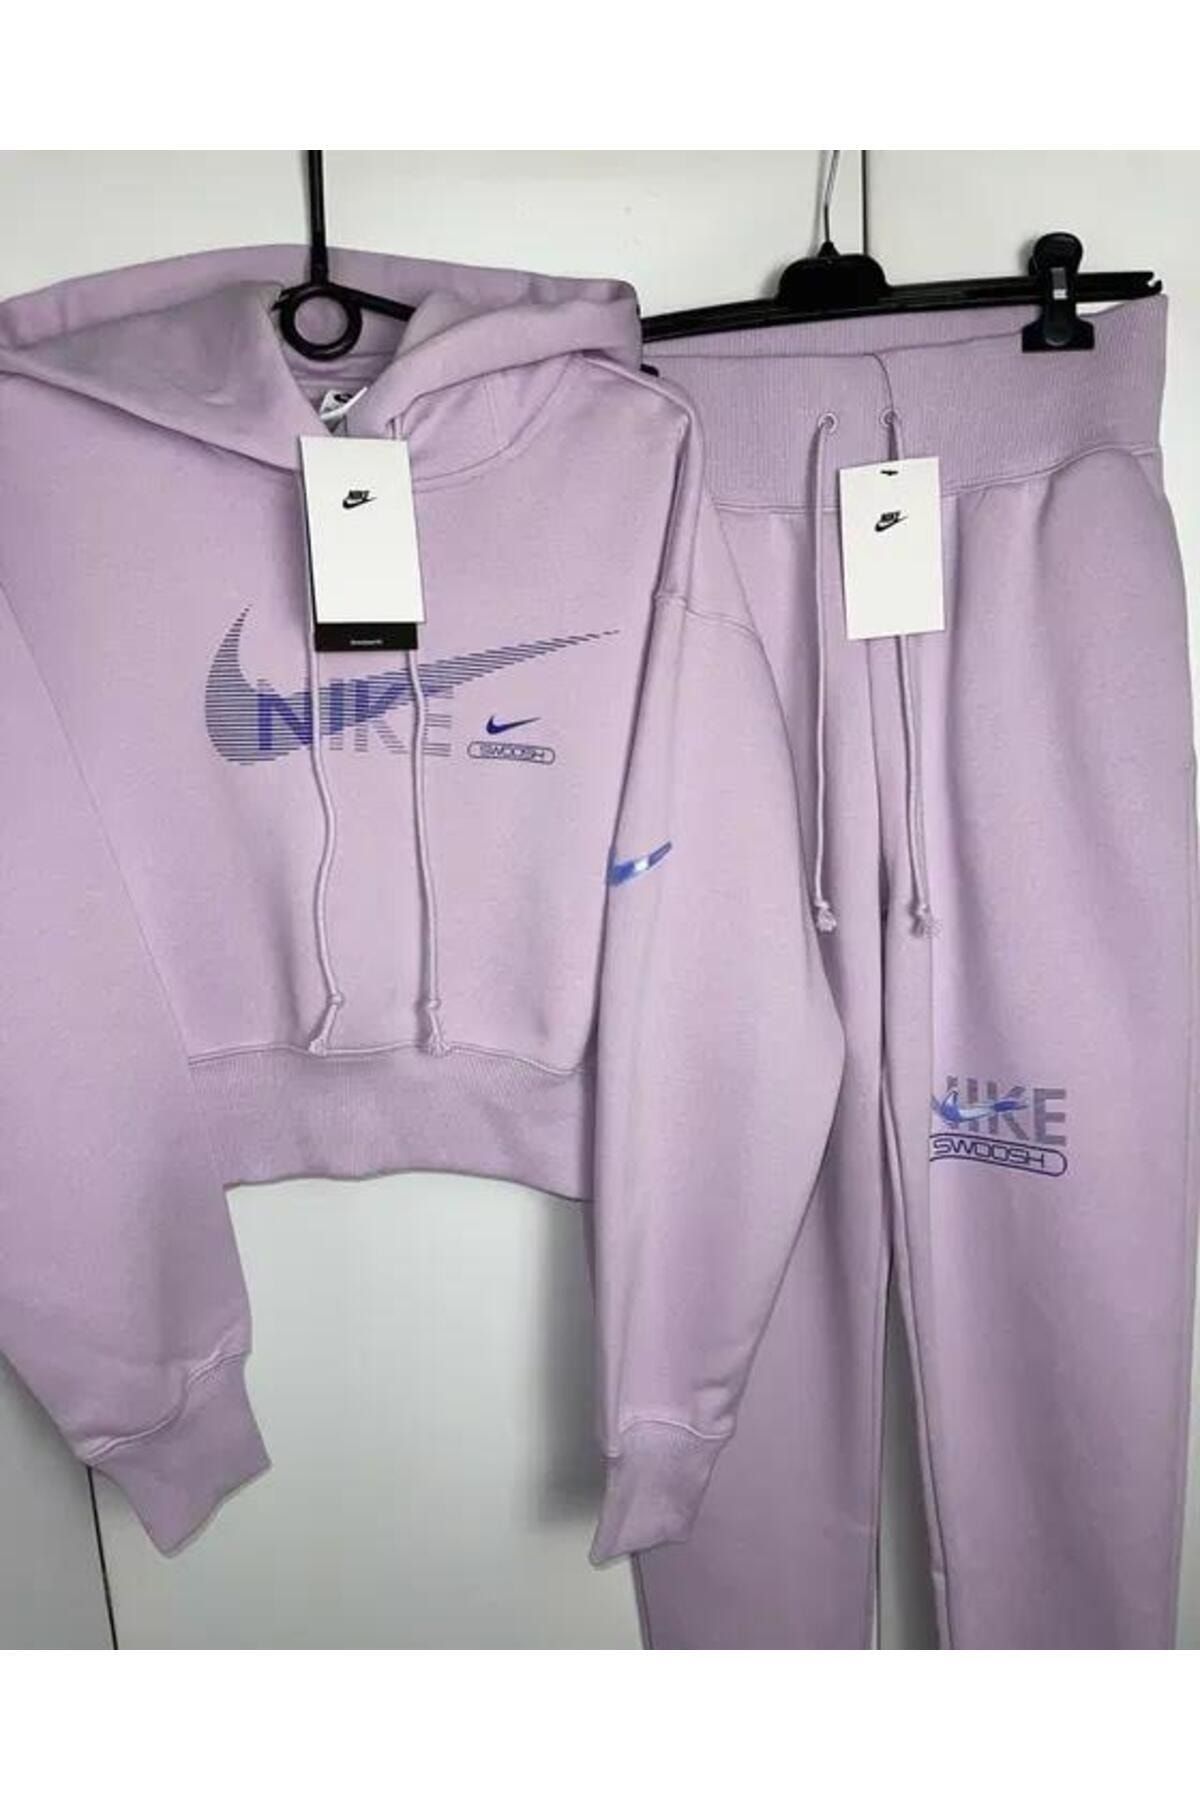 Nike Sportswear Swoosh High-Waist Fleece Women's Sweatpants DR5615